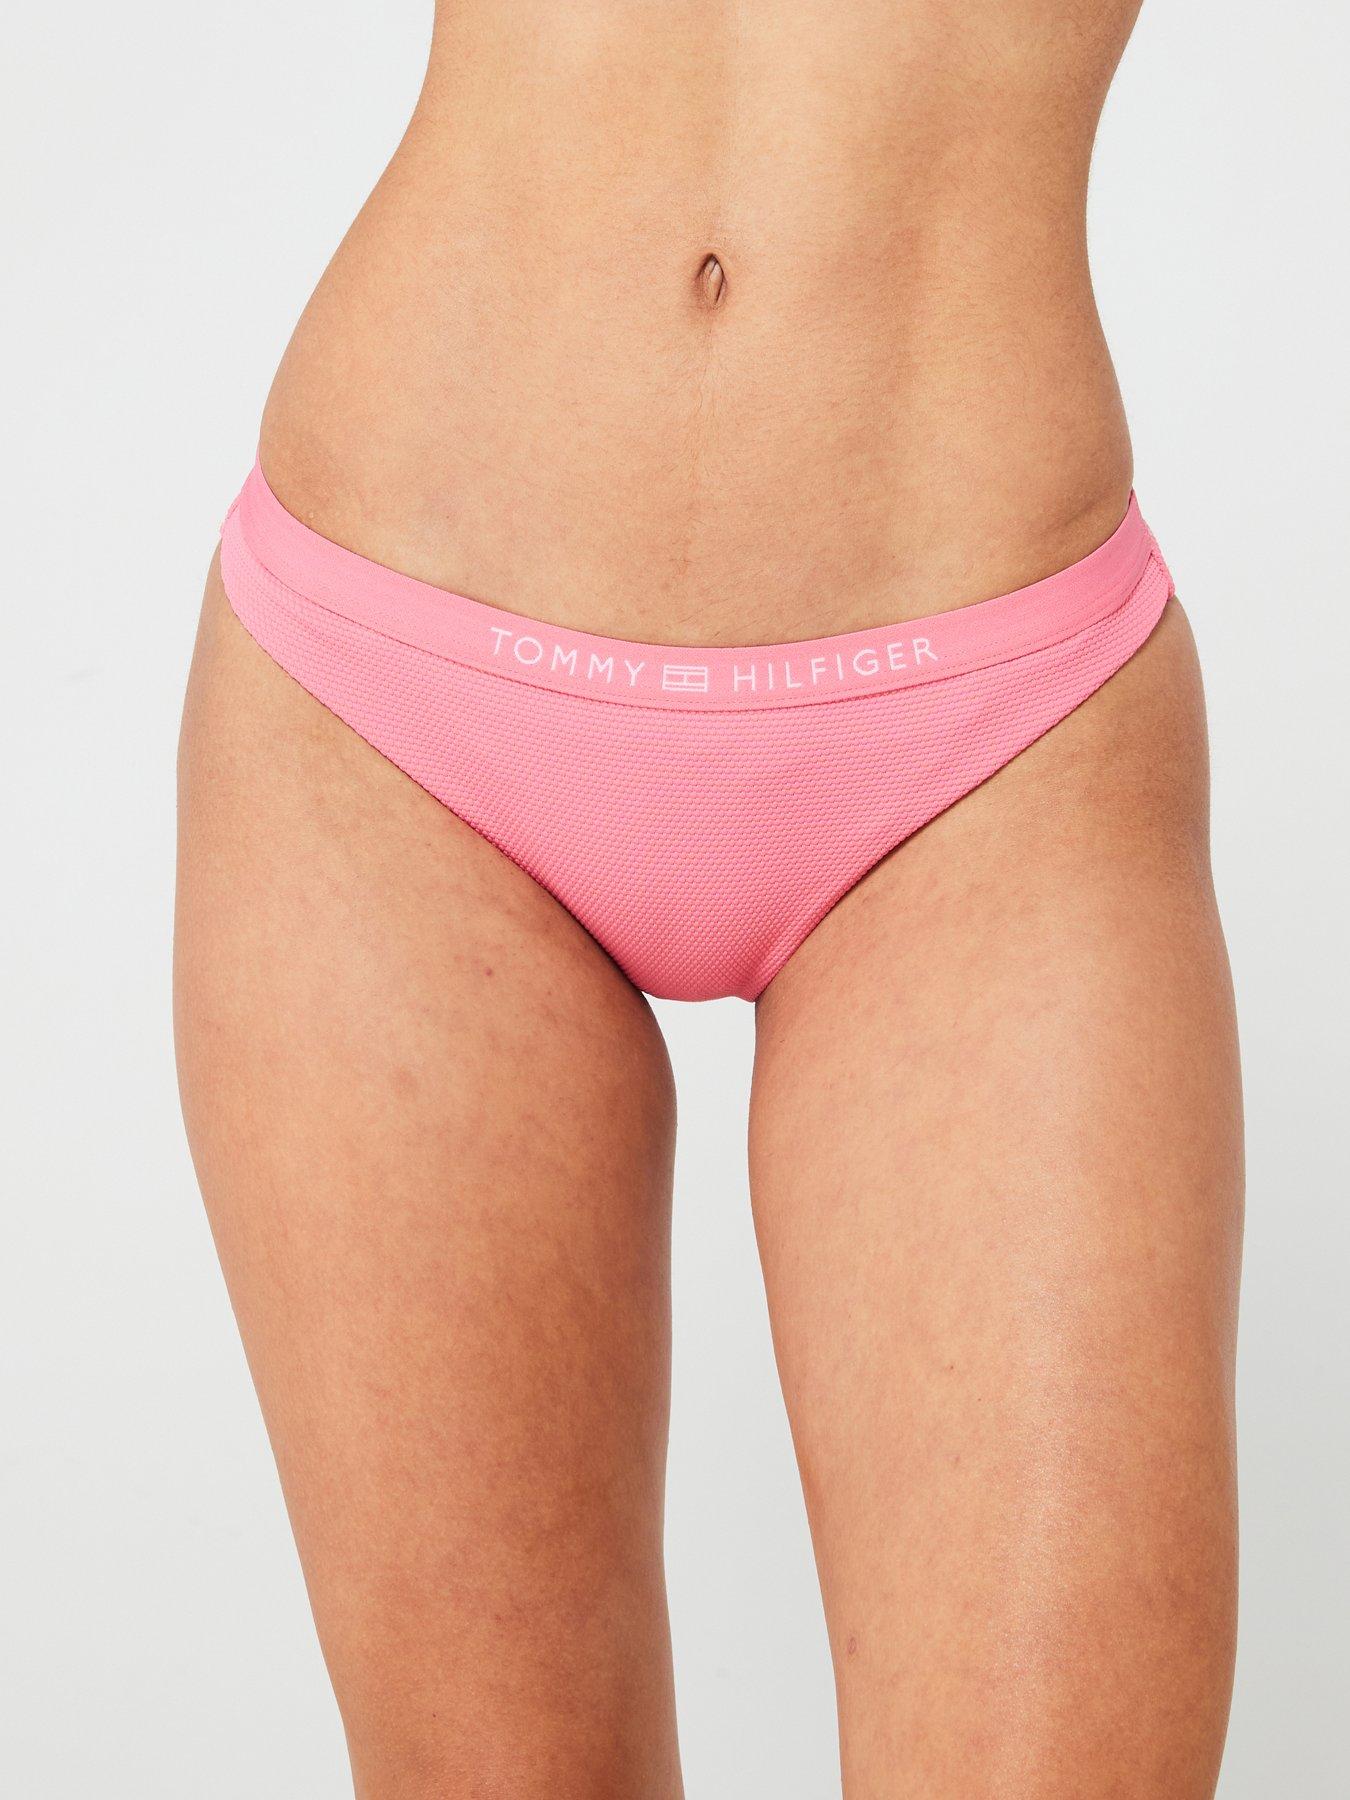 Tommy Hilfiger Tonal Logo Bikini Brief - Pink